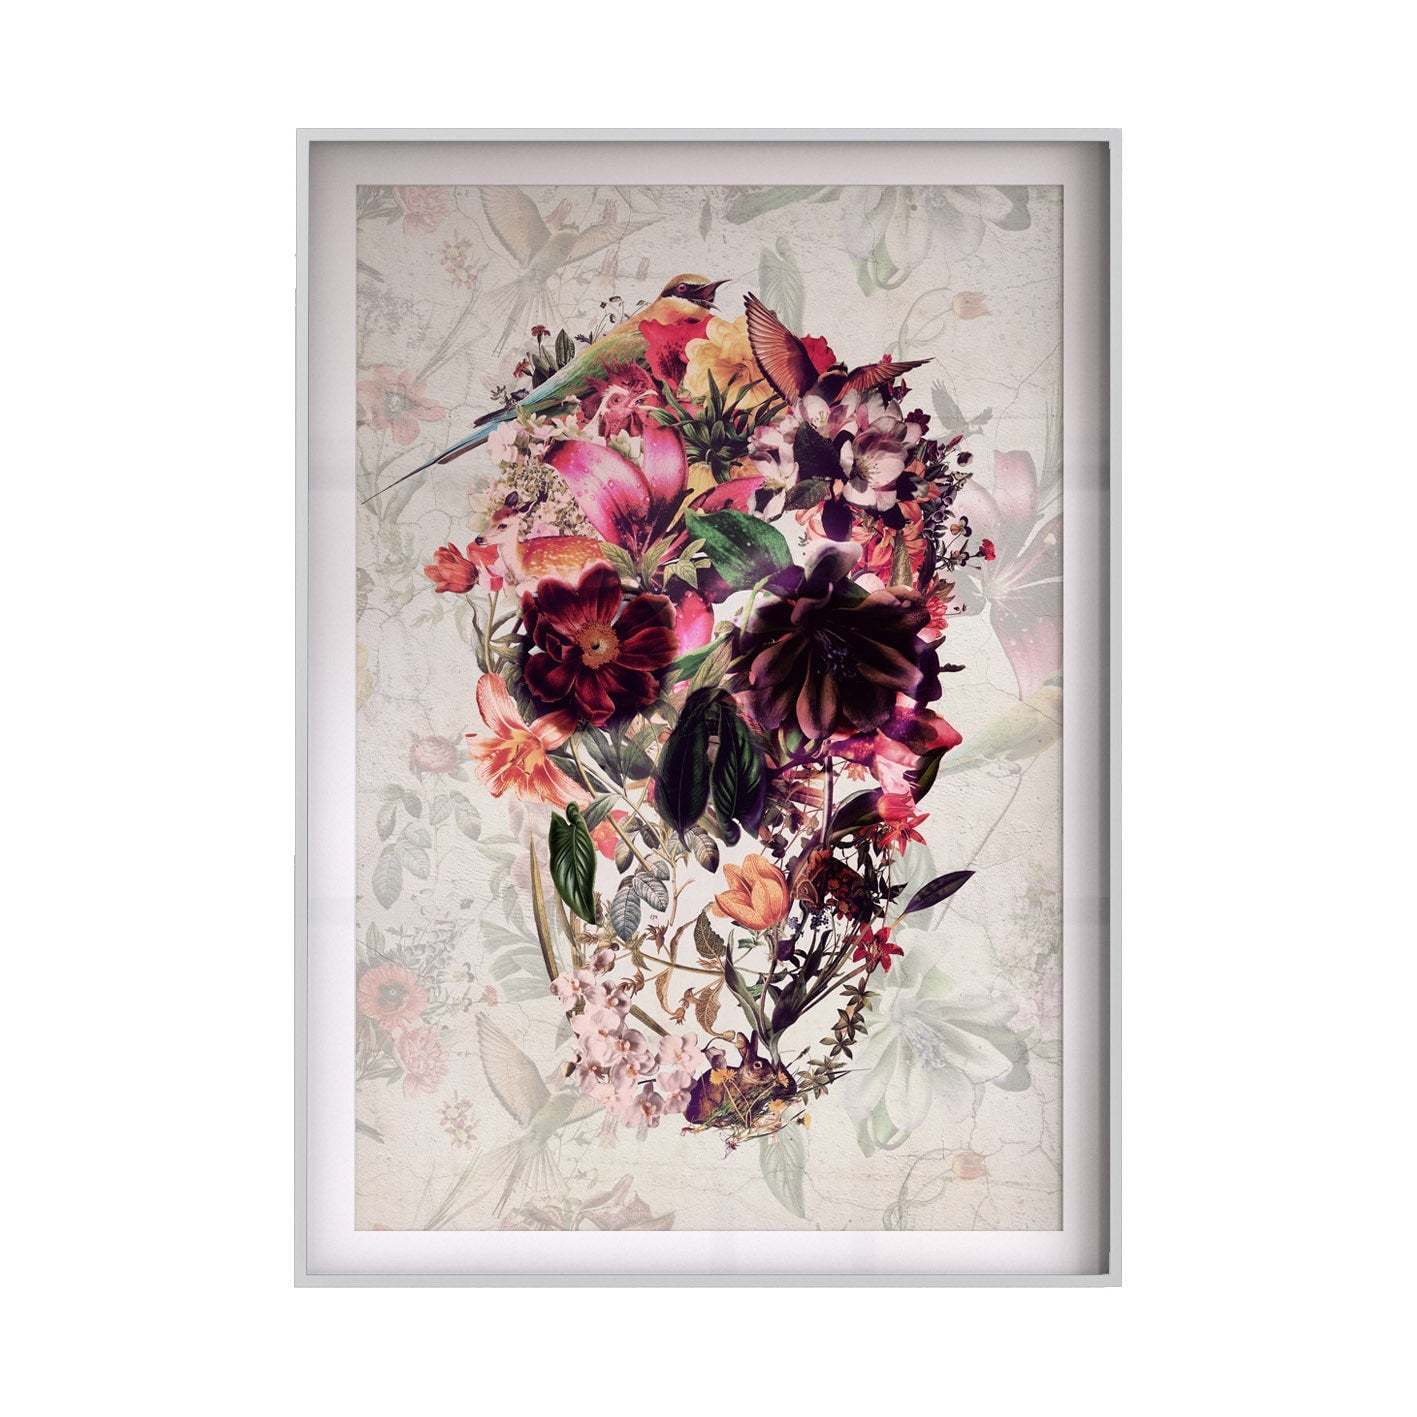 Set Of 2 Skull Art Print, Flower Skull Print Poster Set, Floral Skull Art Botanical Print Home Decor, Sugar Skull Illustration Wall Art Gift